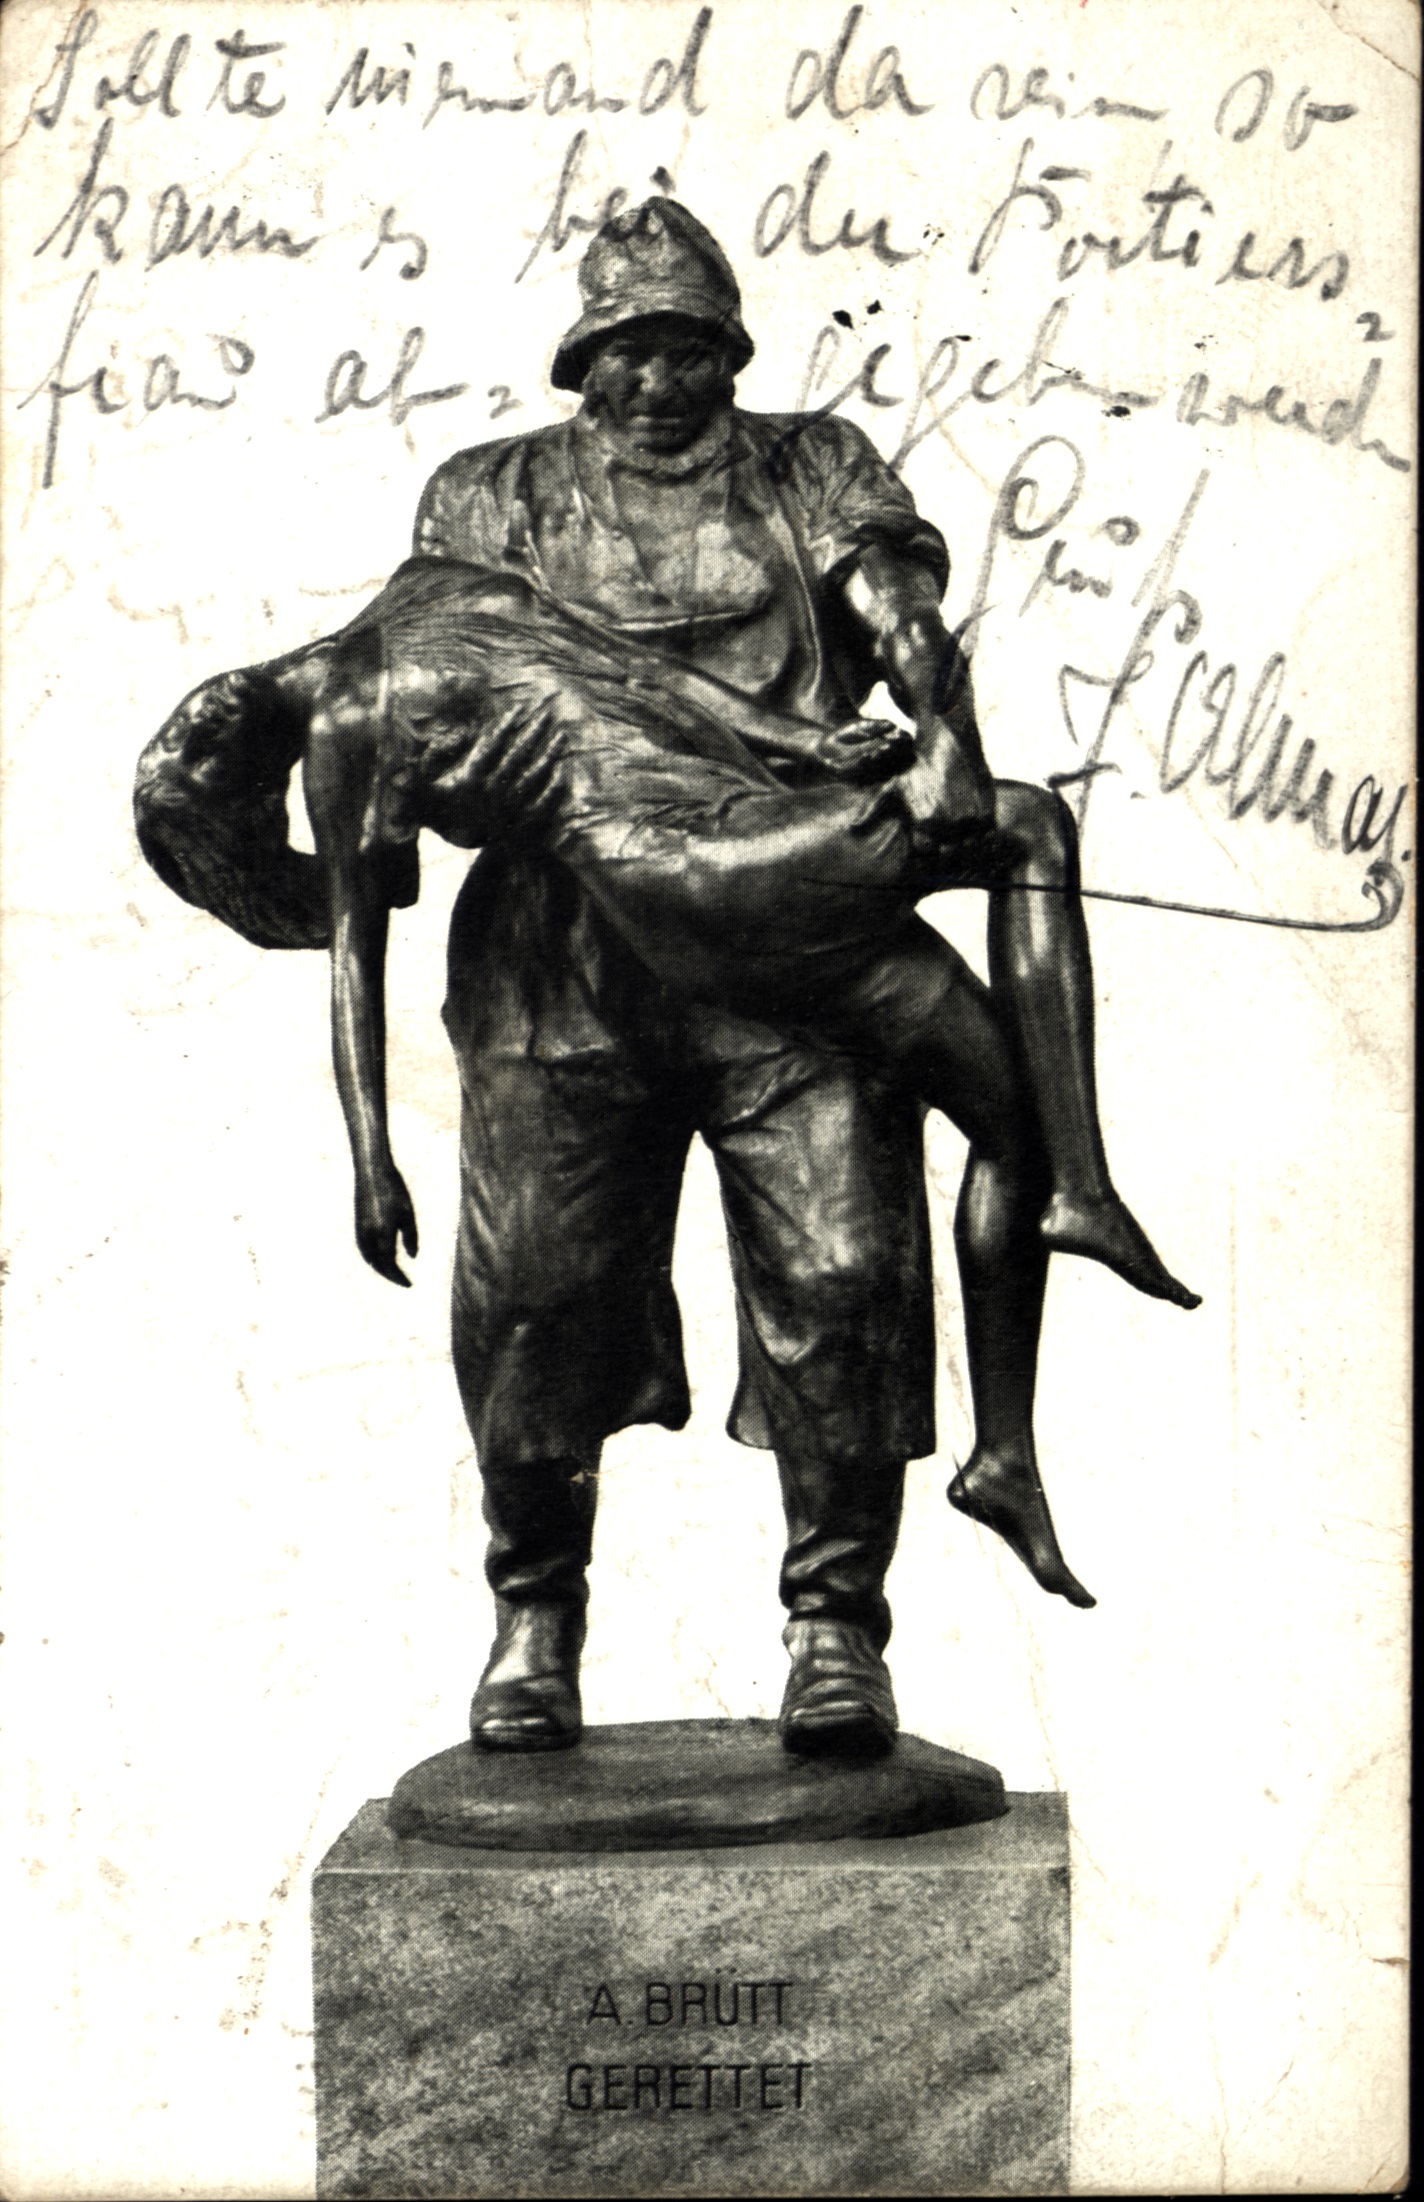 Postkarte aus dem Jahr 1924 mit dem Bild einer Bronzestatue.